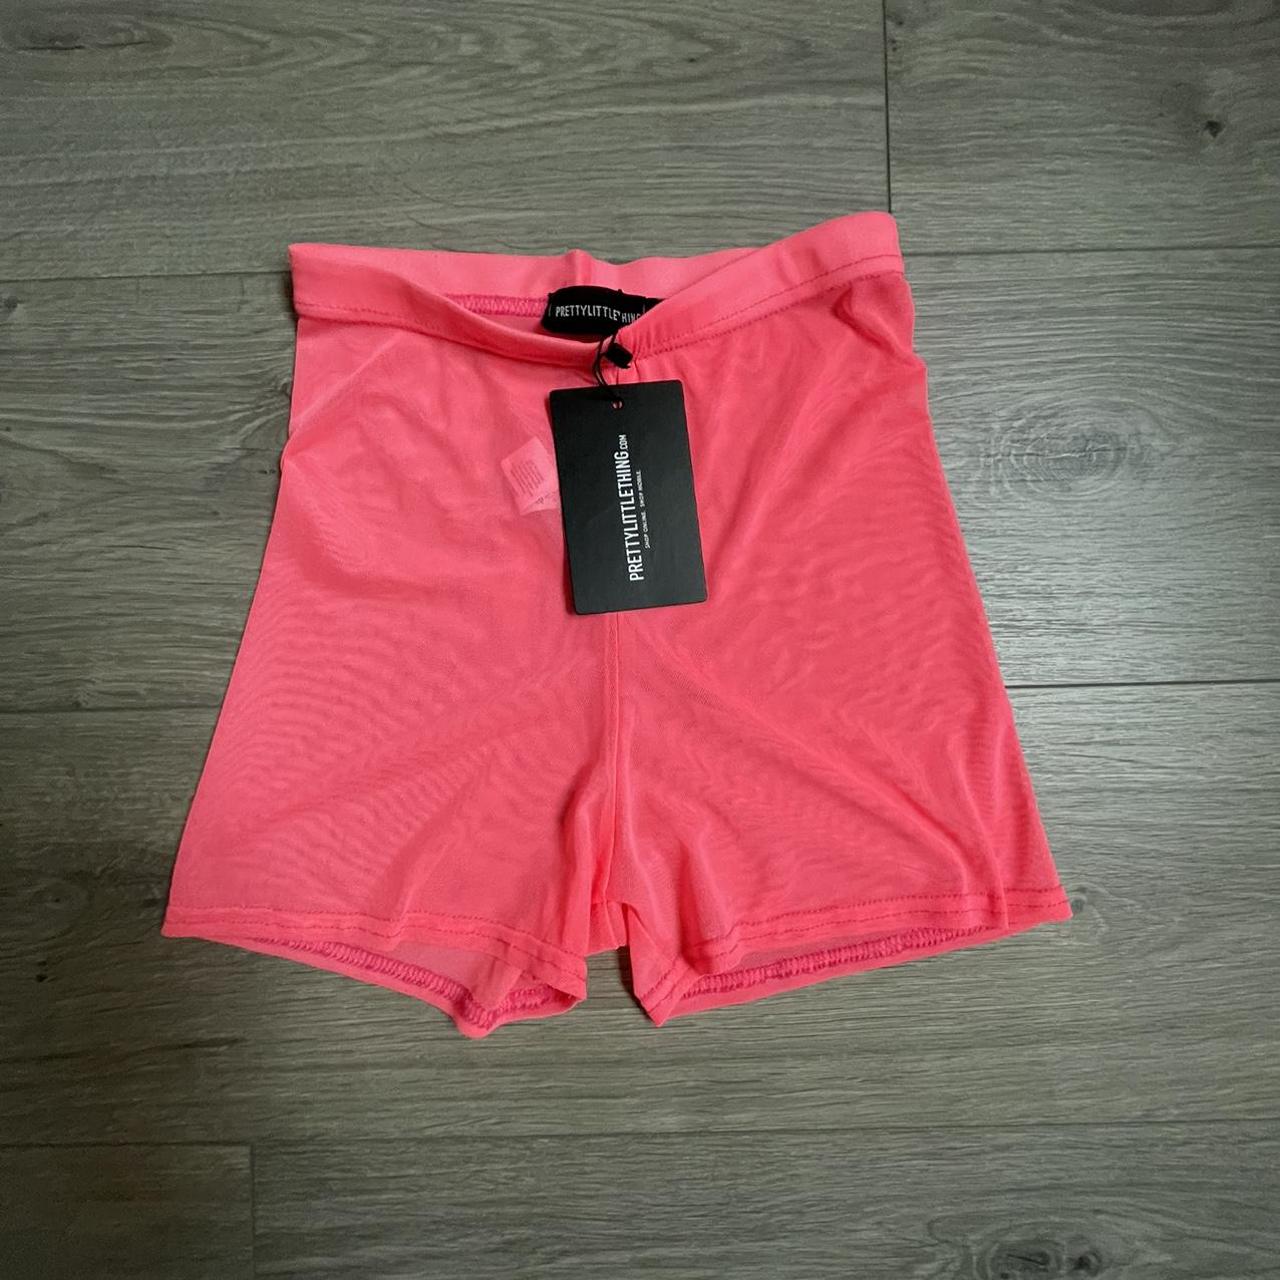 PLT Mesh Pink Shorts Size 6 Good for... - Depop